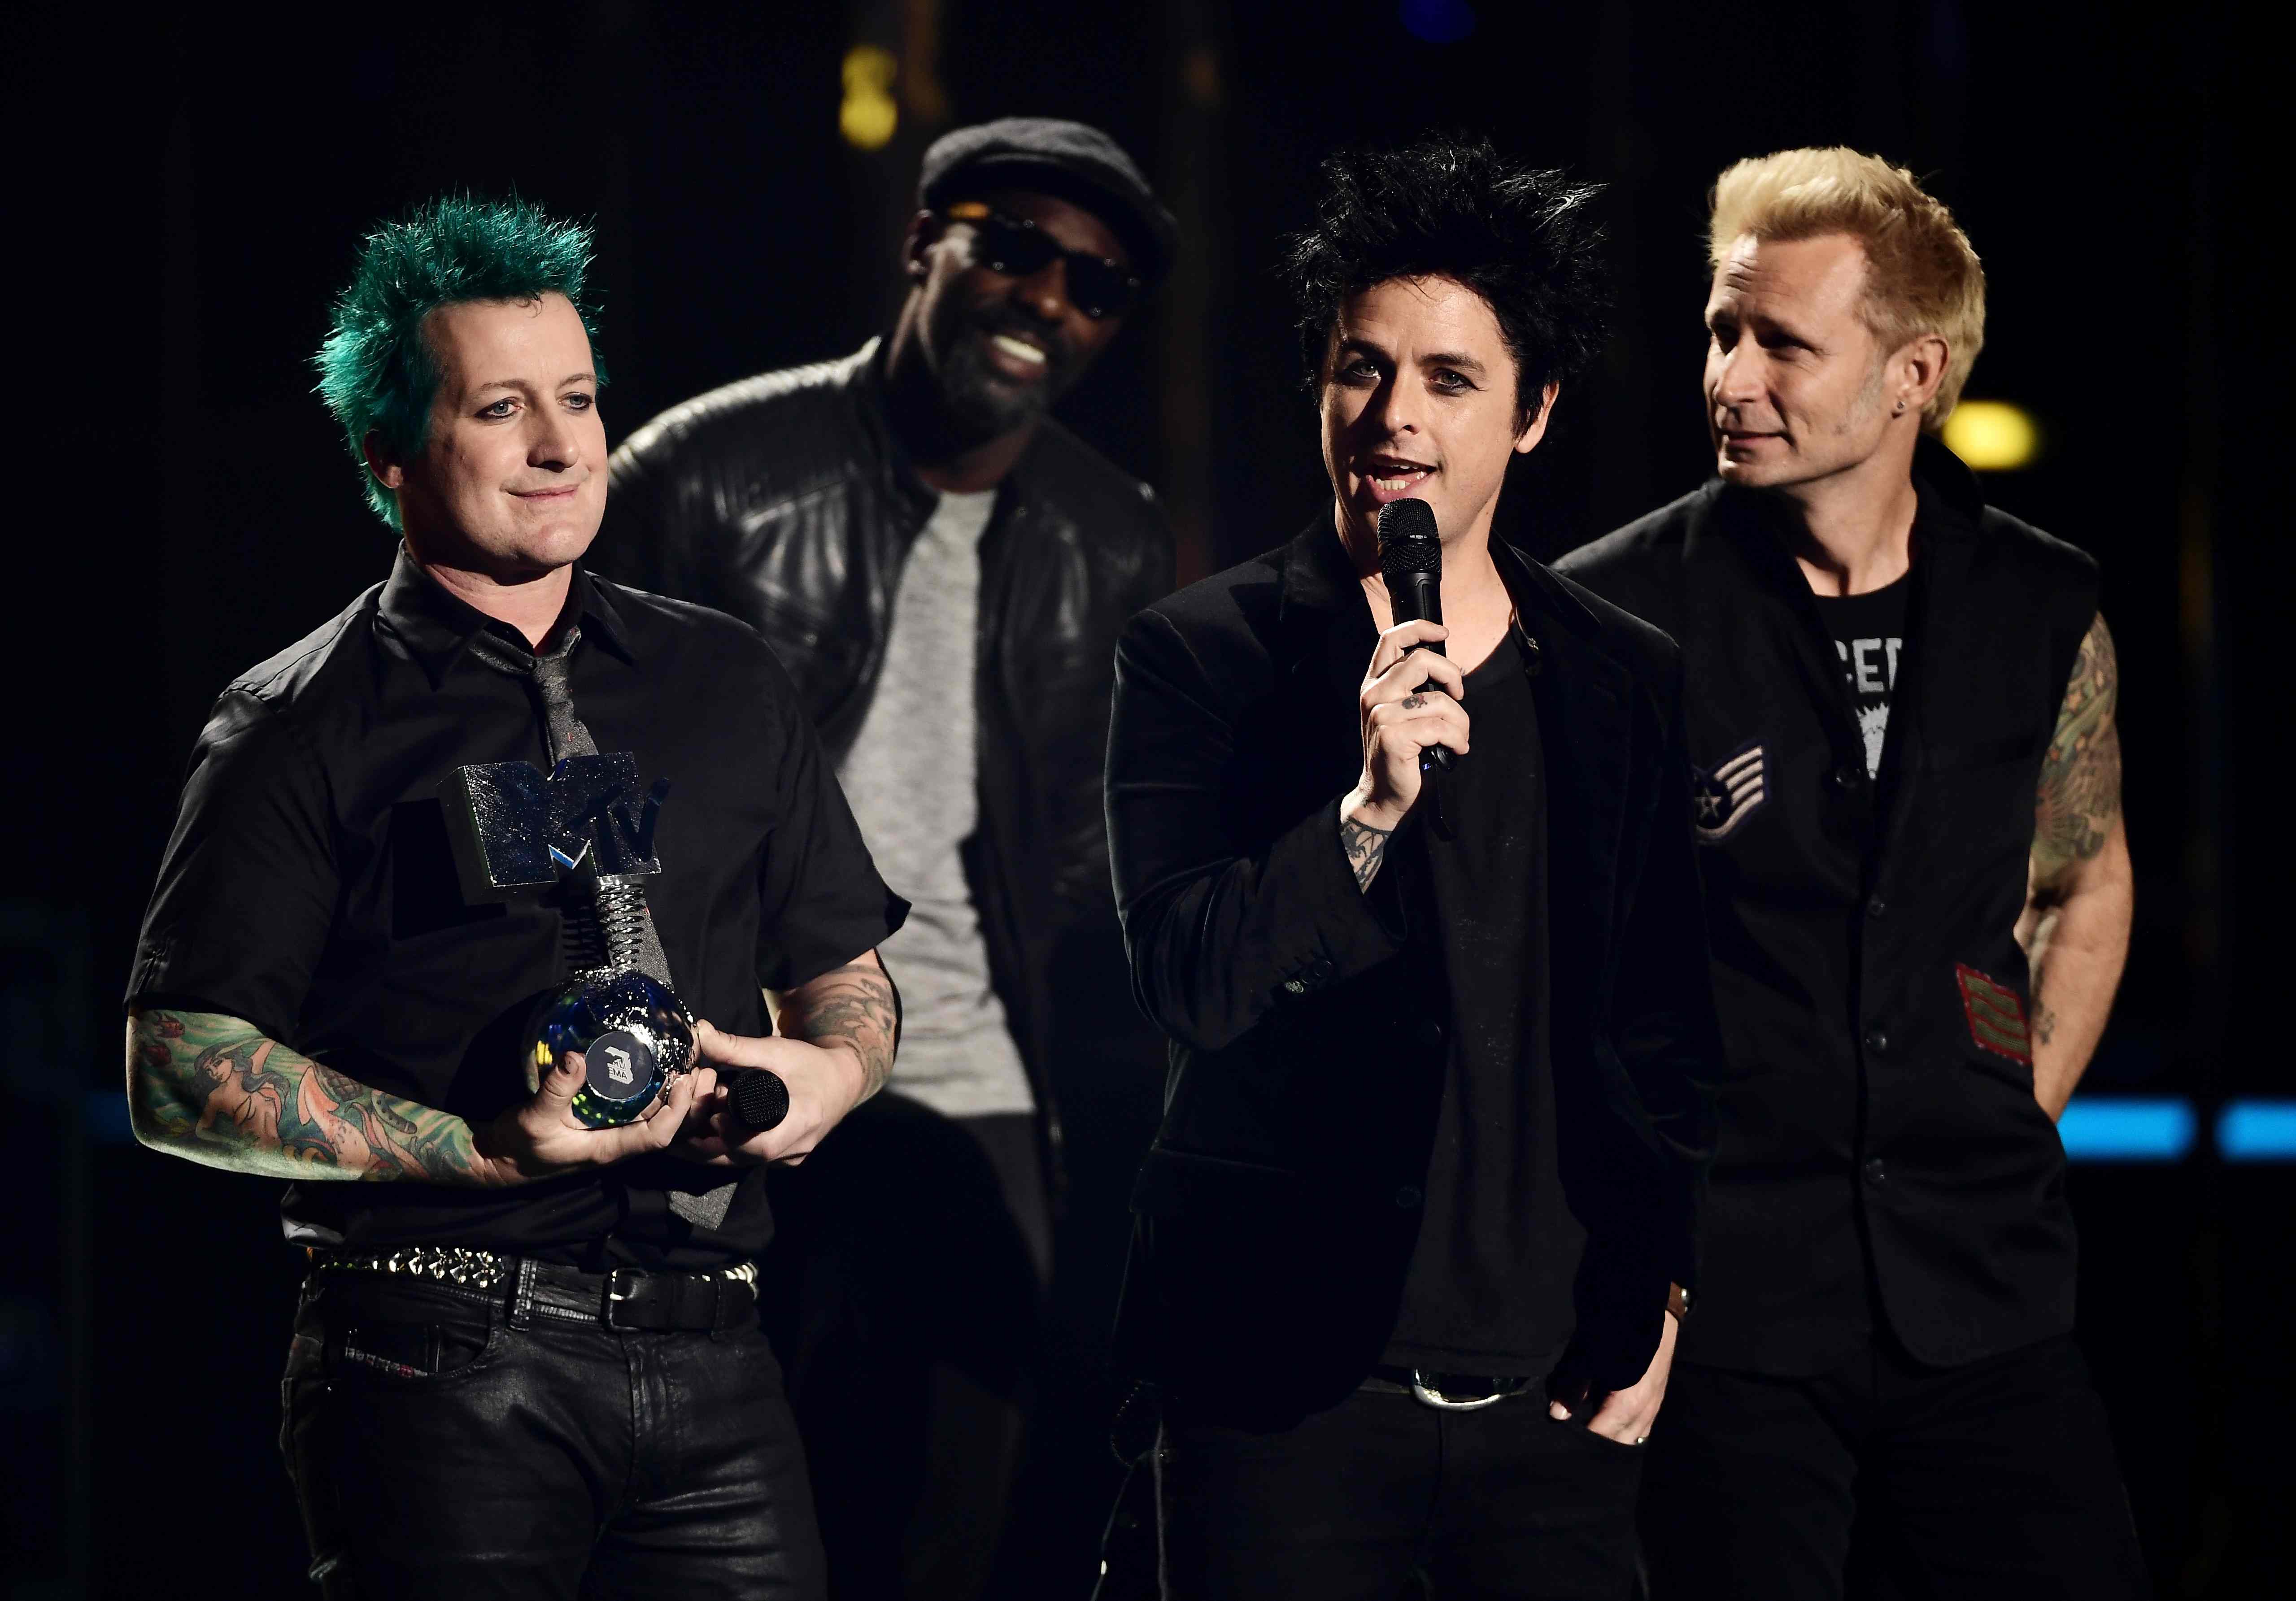 Tre Cool, Billie Joe Armstrong und Mike Dirnt von Green Day nehmen ihren Global Icon Award in Empfang